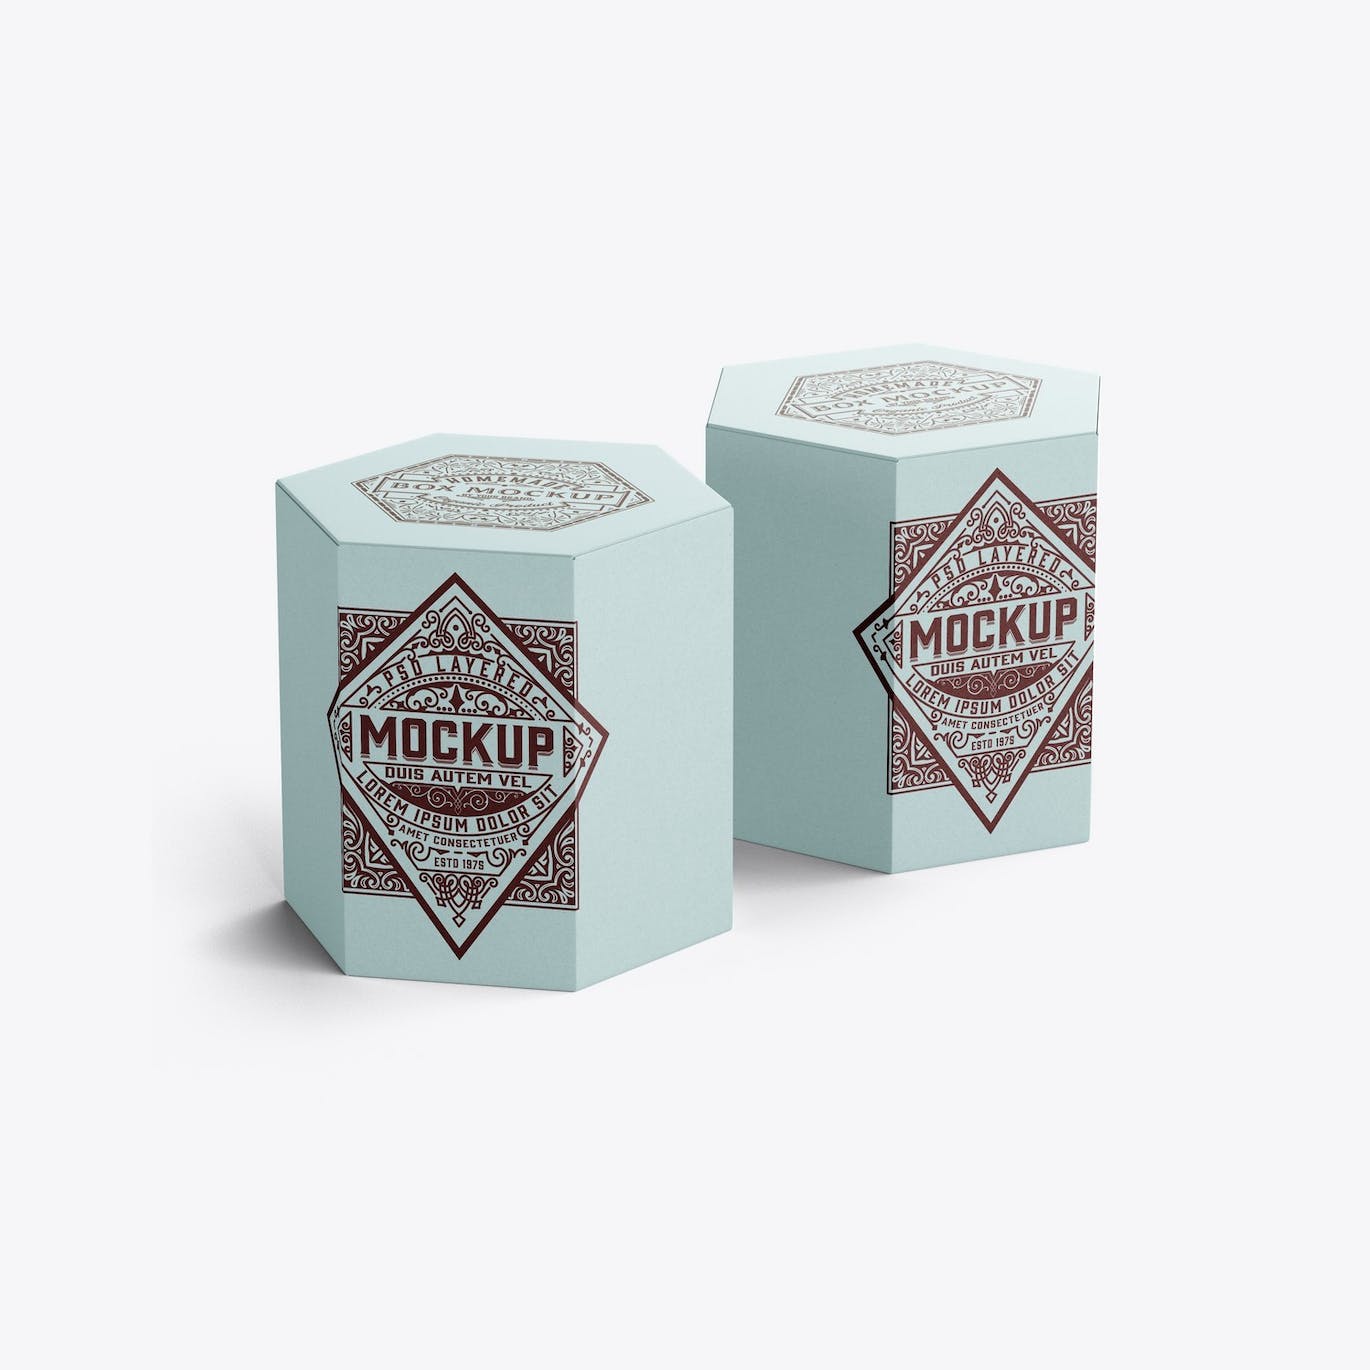 六边形长方体纸盒包装设计样机 Hexagonal Box Mockup 样机素材 第7张